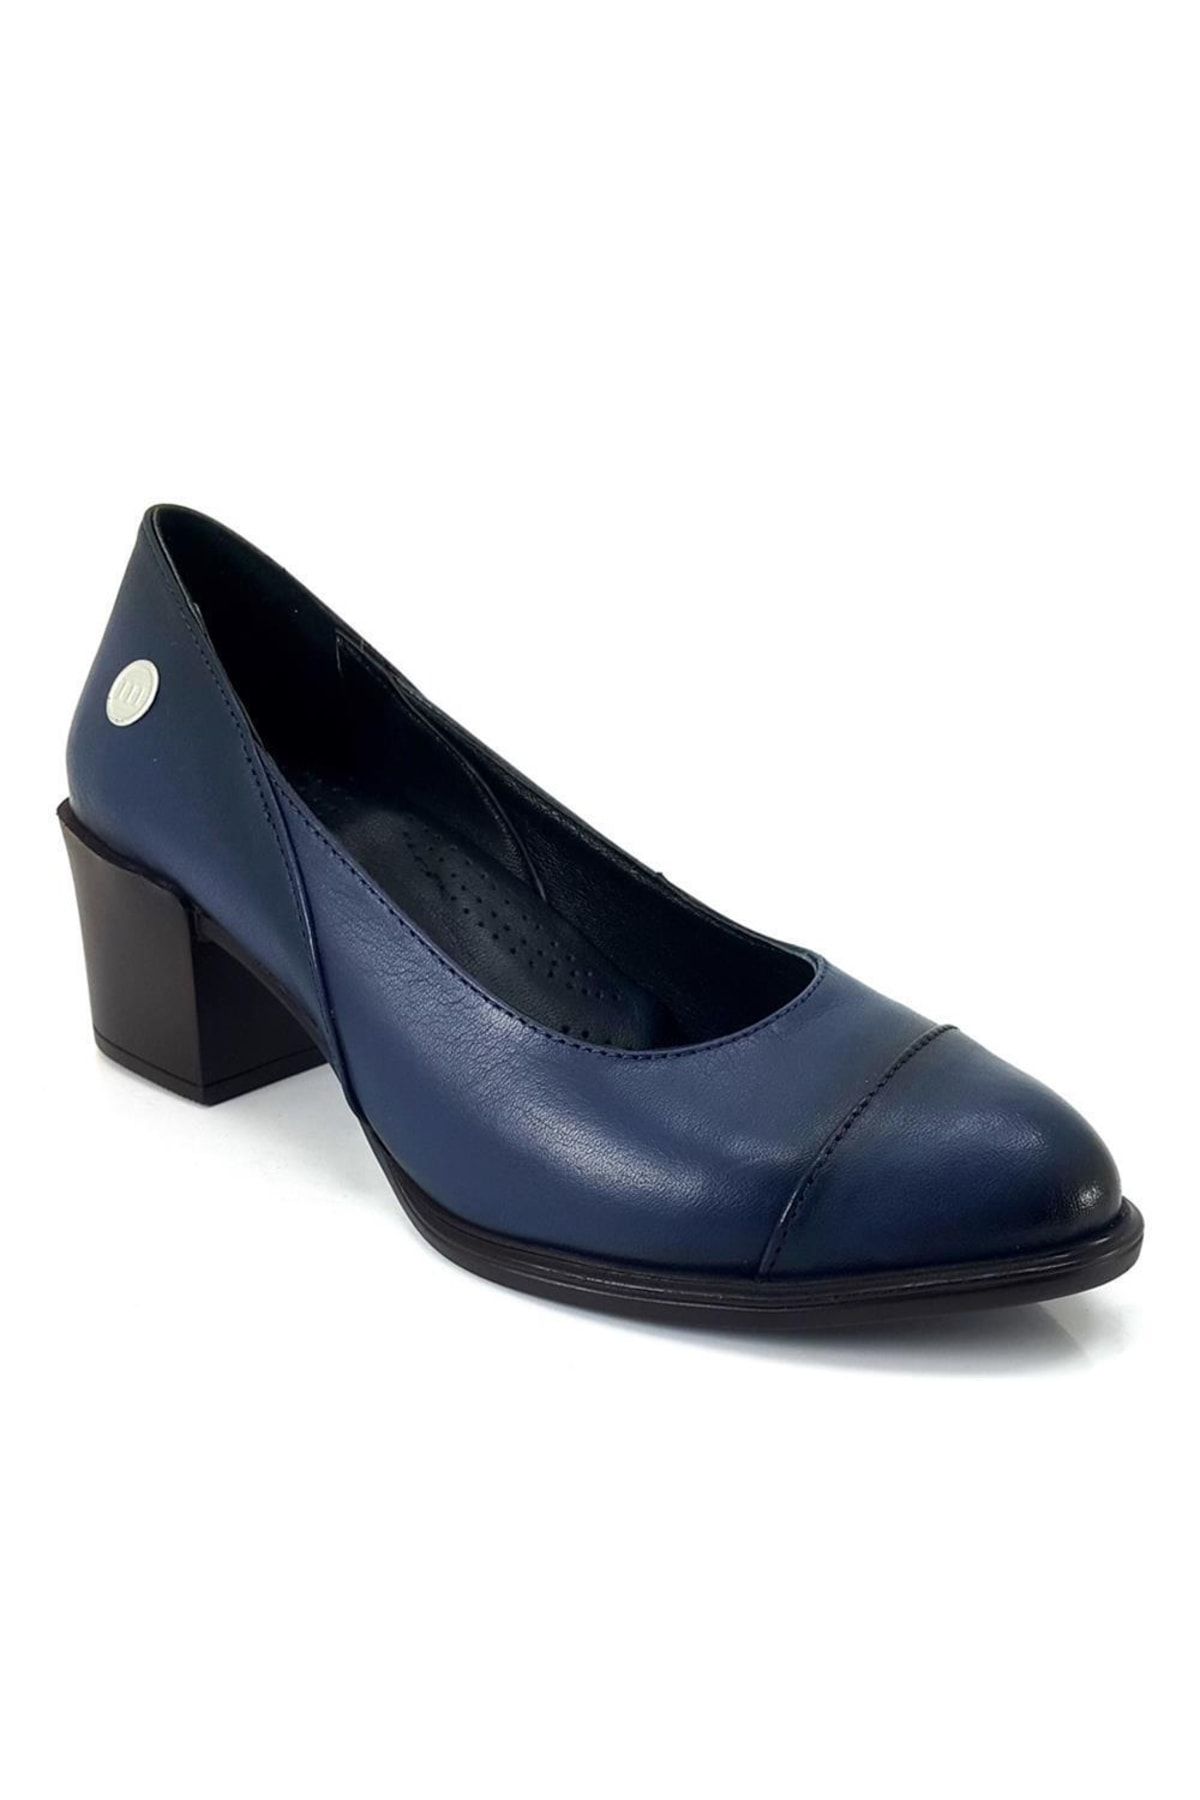 Mammamia D23ya-340 Topuklu Klasik Deri Kadın Ayakkabı